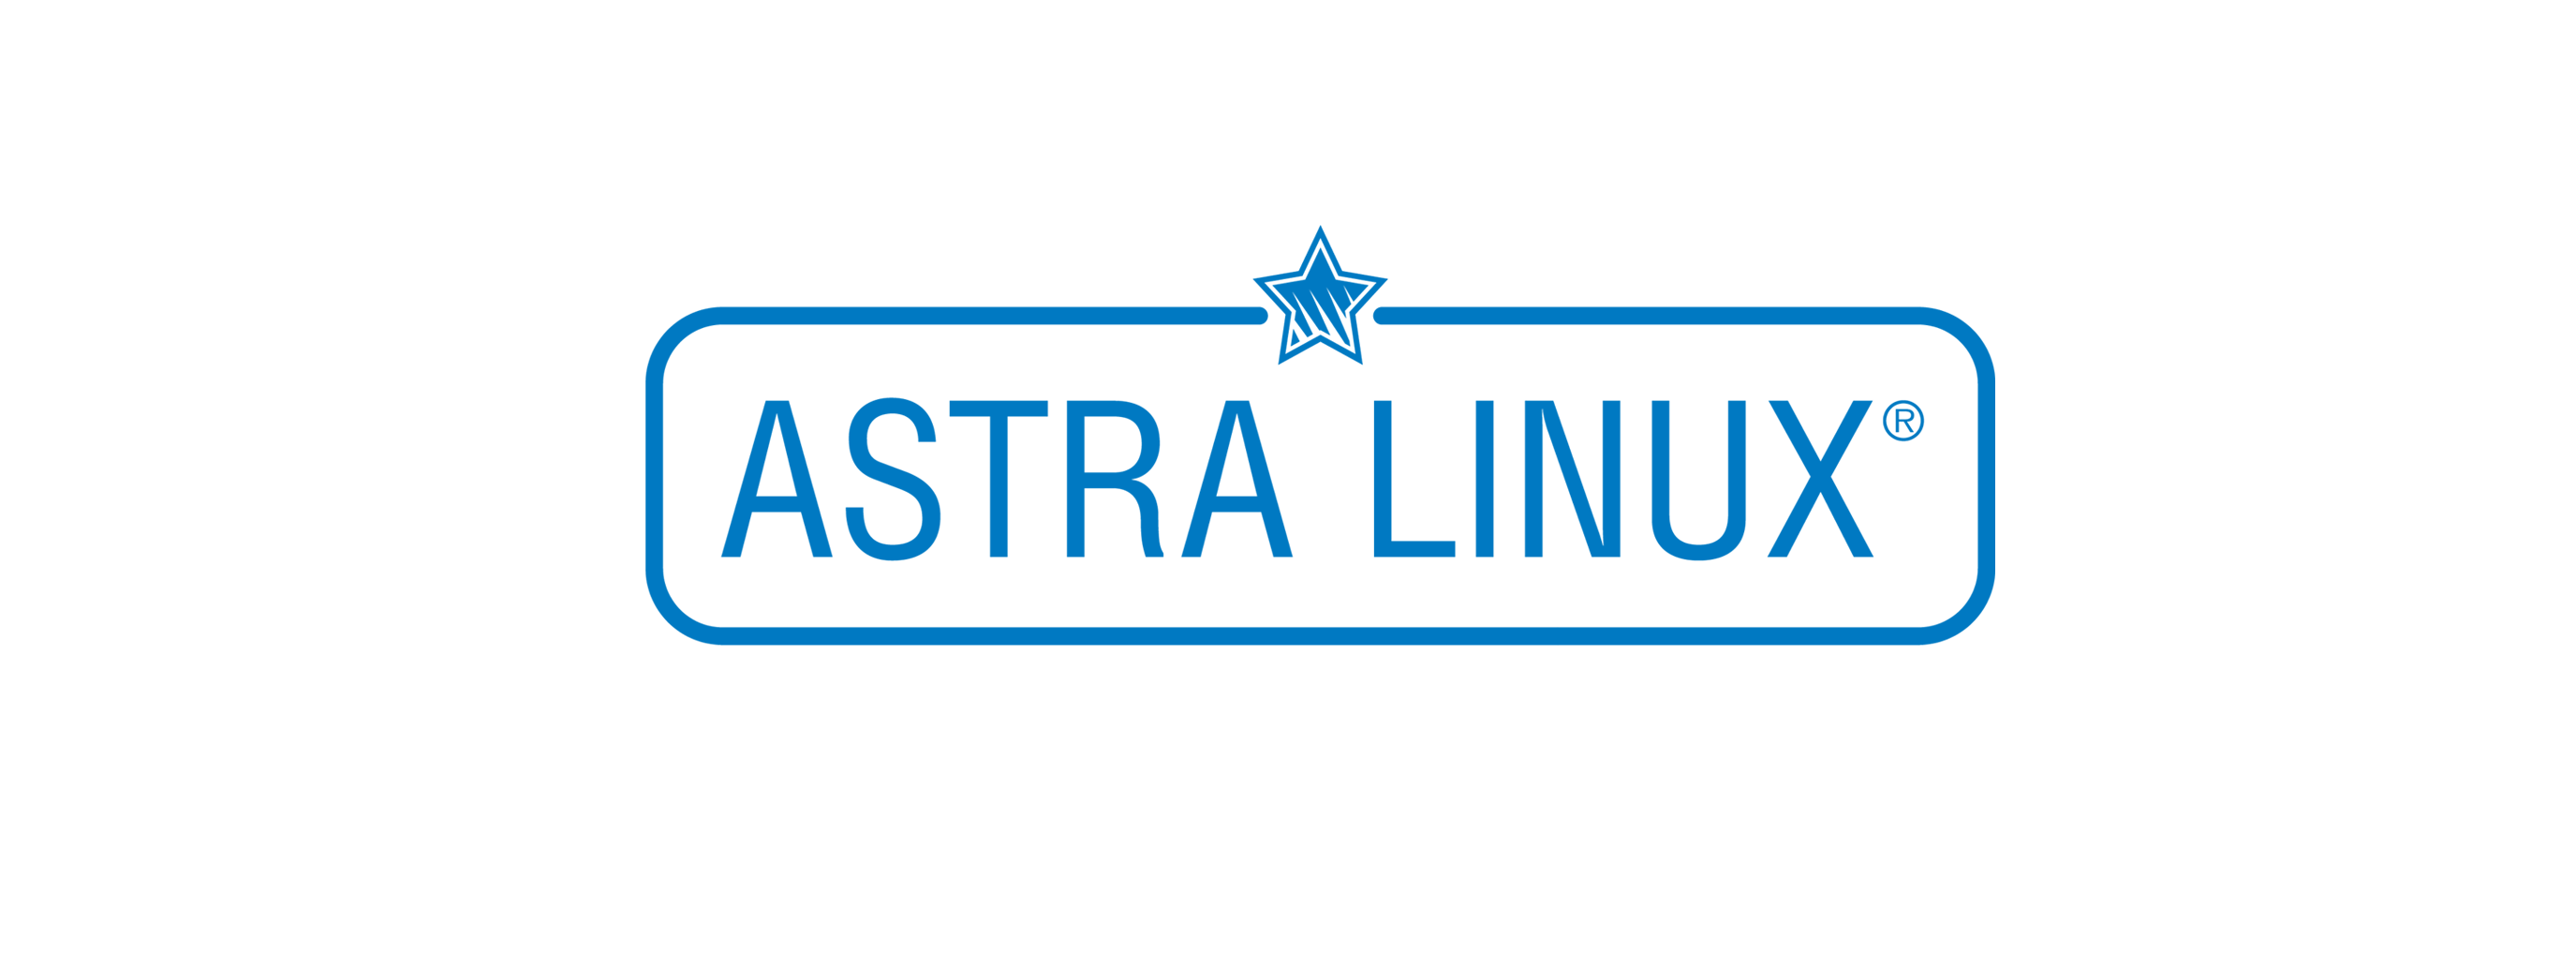 Лицензия РусБИТех Astra Linux Special Edition (очередное обновление 1.7), уровень защищенности Максимальный (Смоленск), РУСБ.10015-01 (ФСТЭК), Russian, на срок действия исключительного права базовая лицензия для рабочей станции, OEM (OS2101X8617OEM000WR01